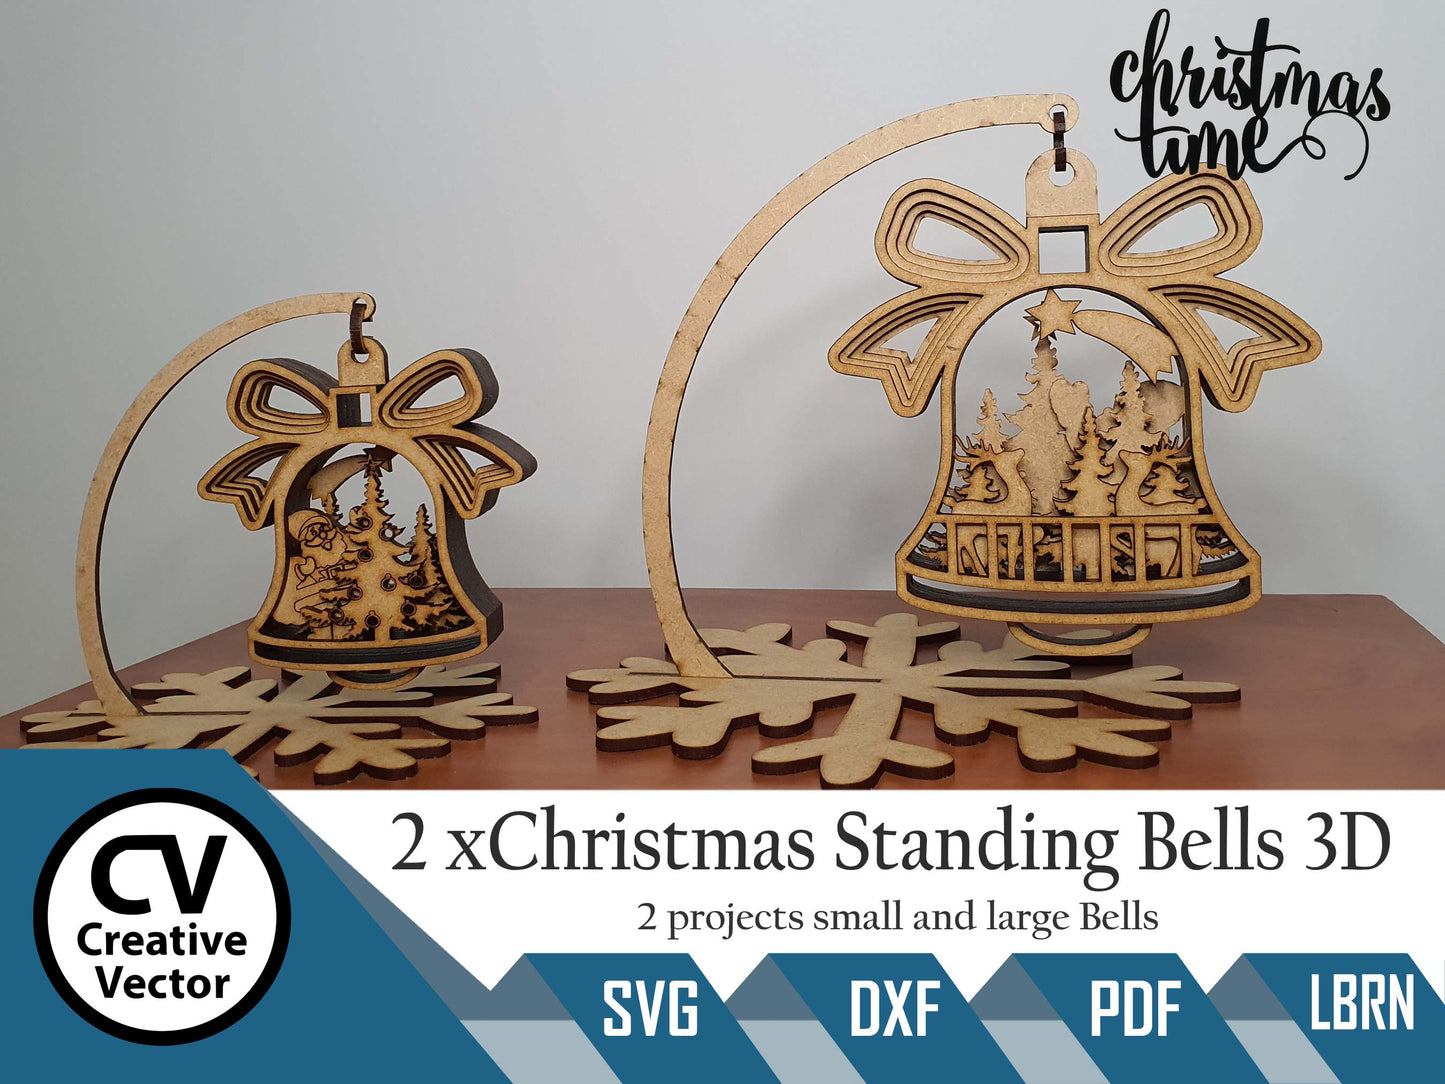 2 x Christmas Standing Bells 3D